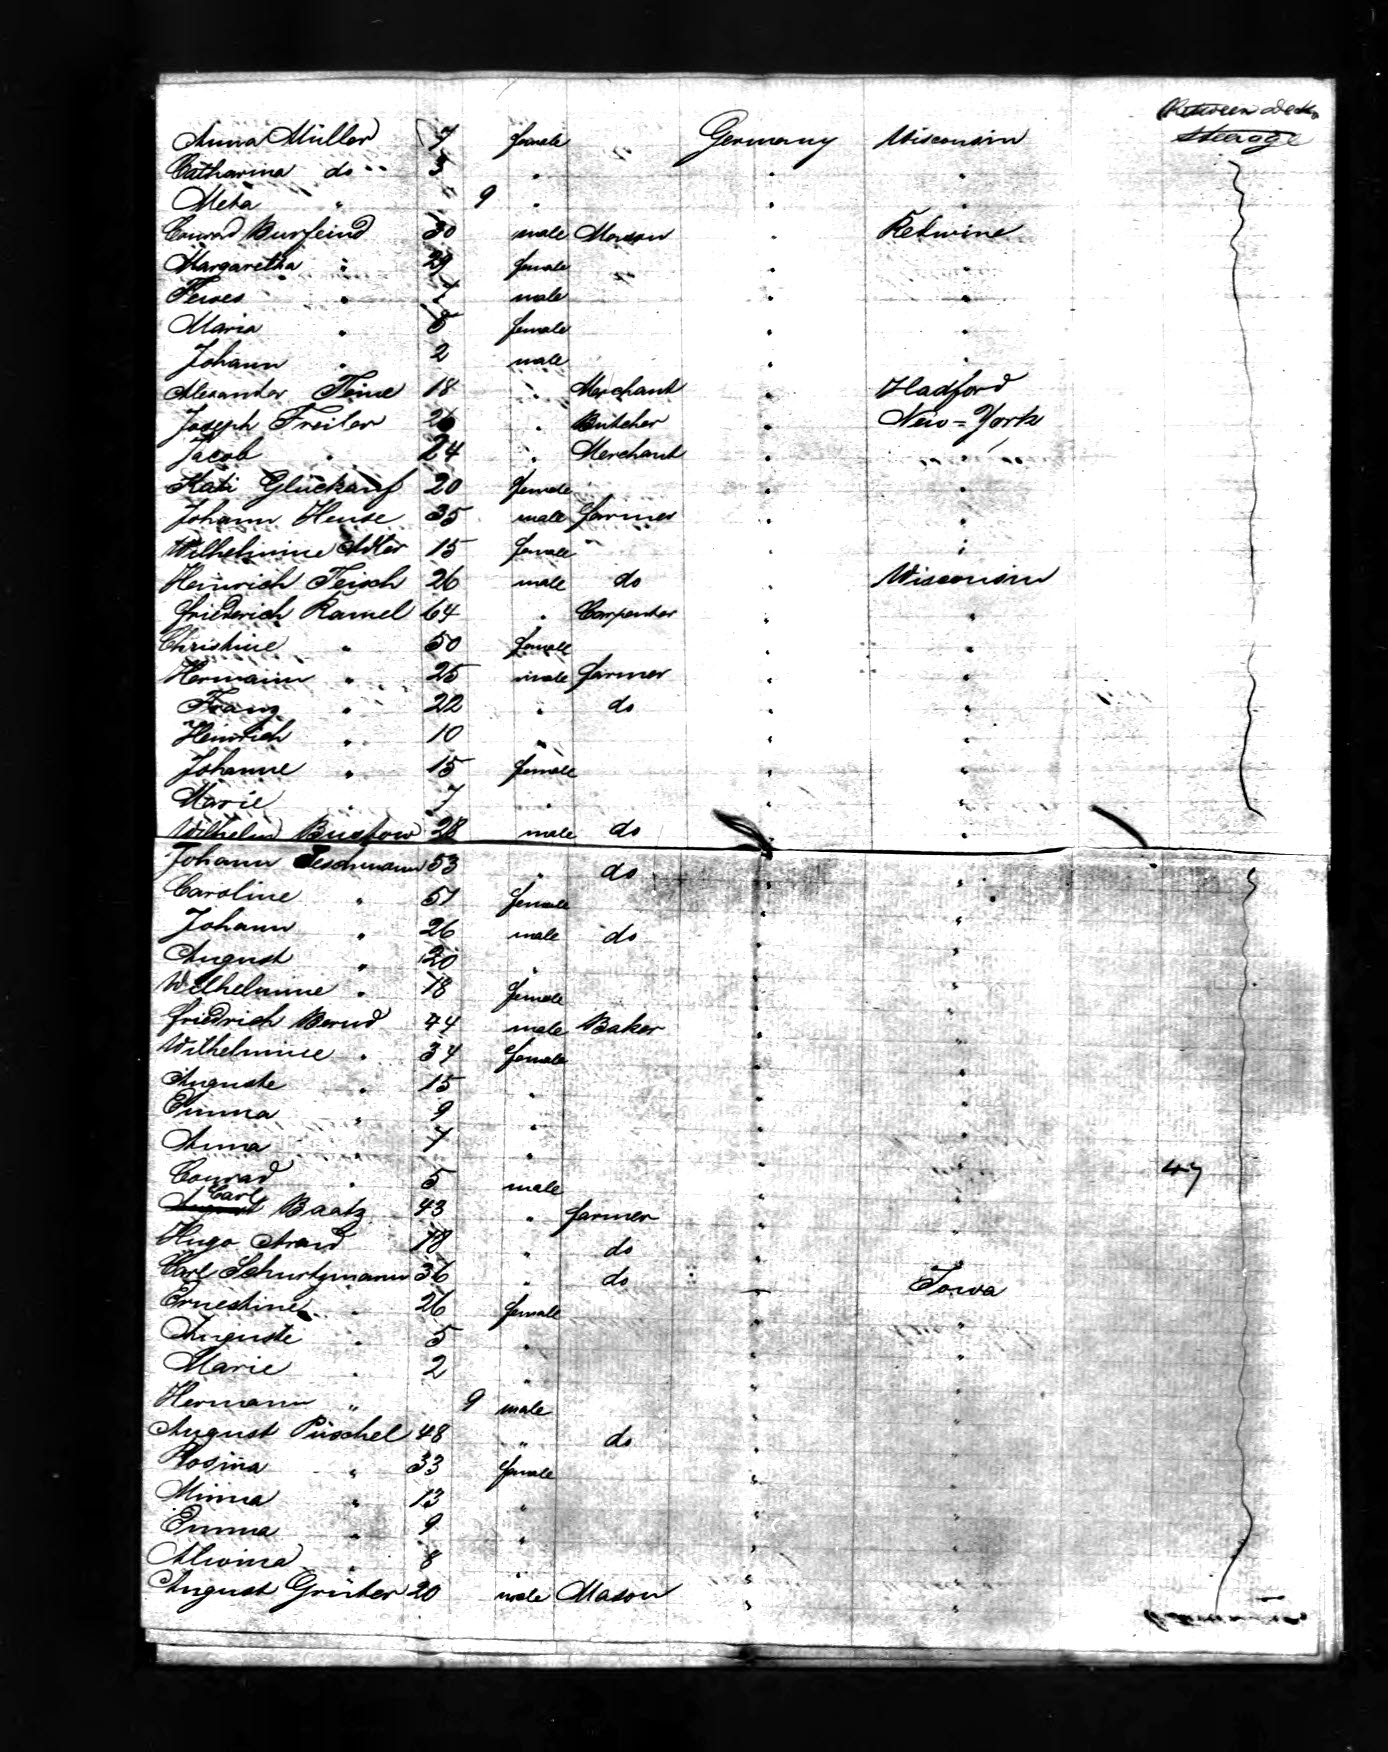 1857 passenger list with Joseph Freiler 2